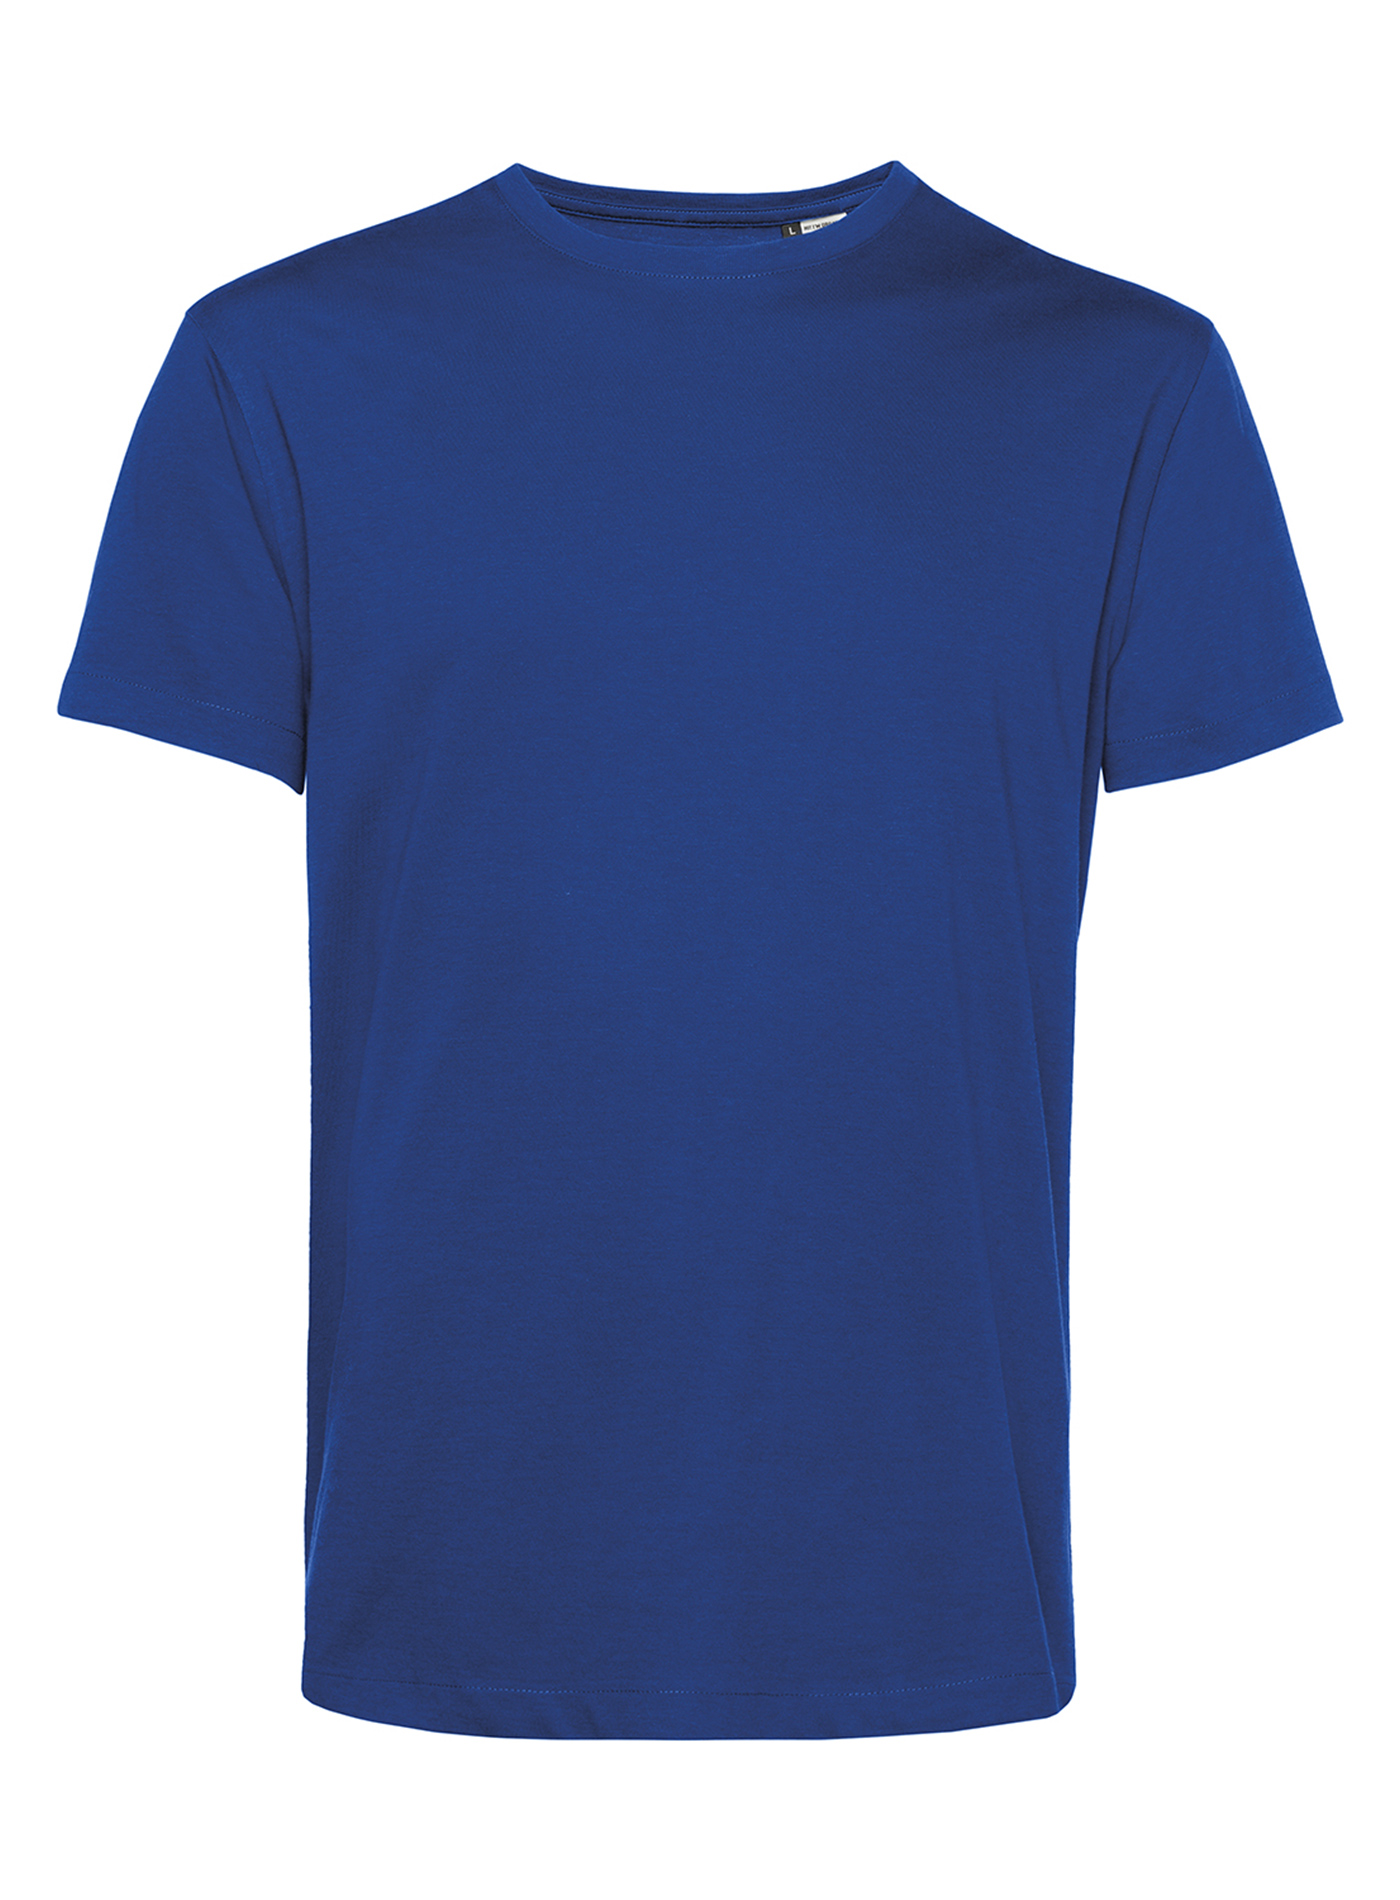 Pánské tričko Organic B&C - Královská modrá L